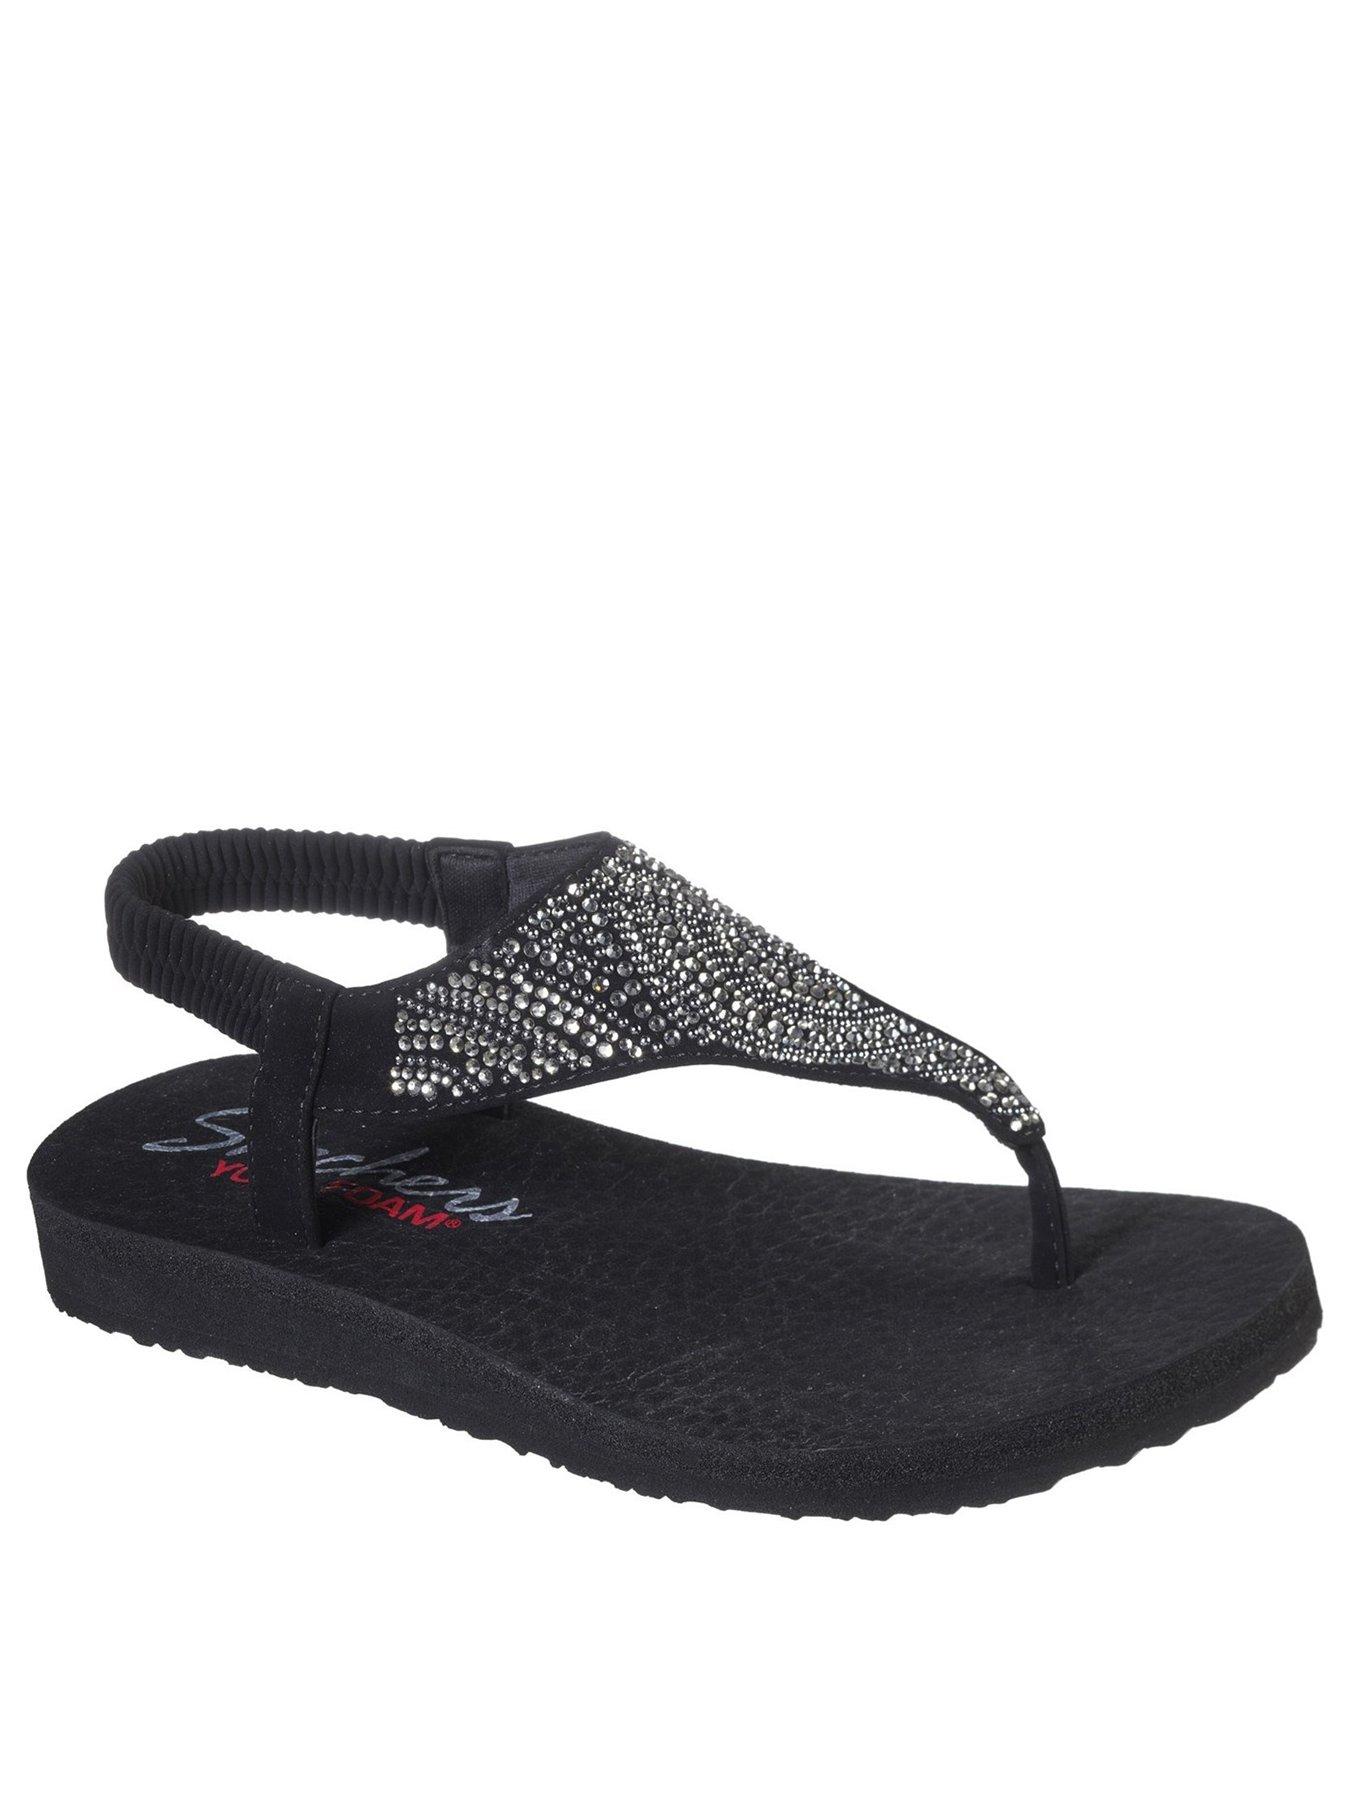 Skechers | Sandals \u0026 flip flops | Shoes 